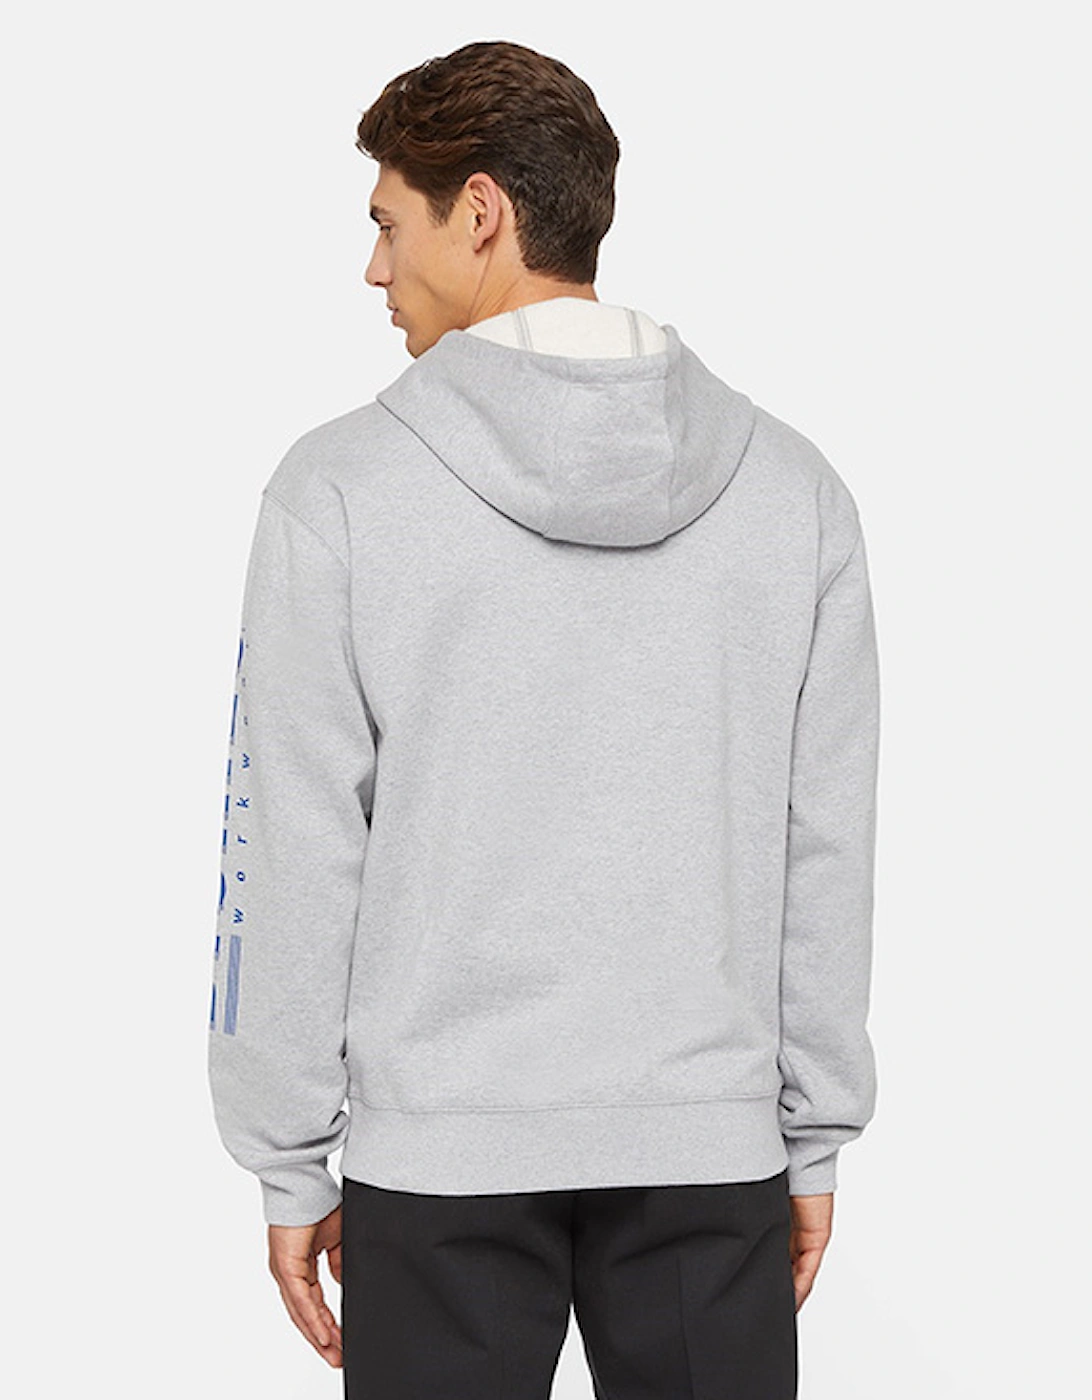 Men's Graphic Pullover Fleece Grey